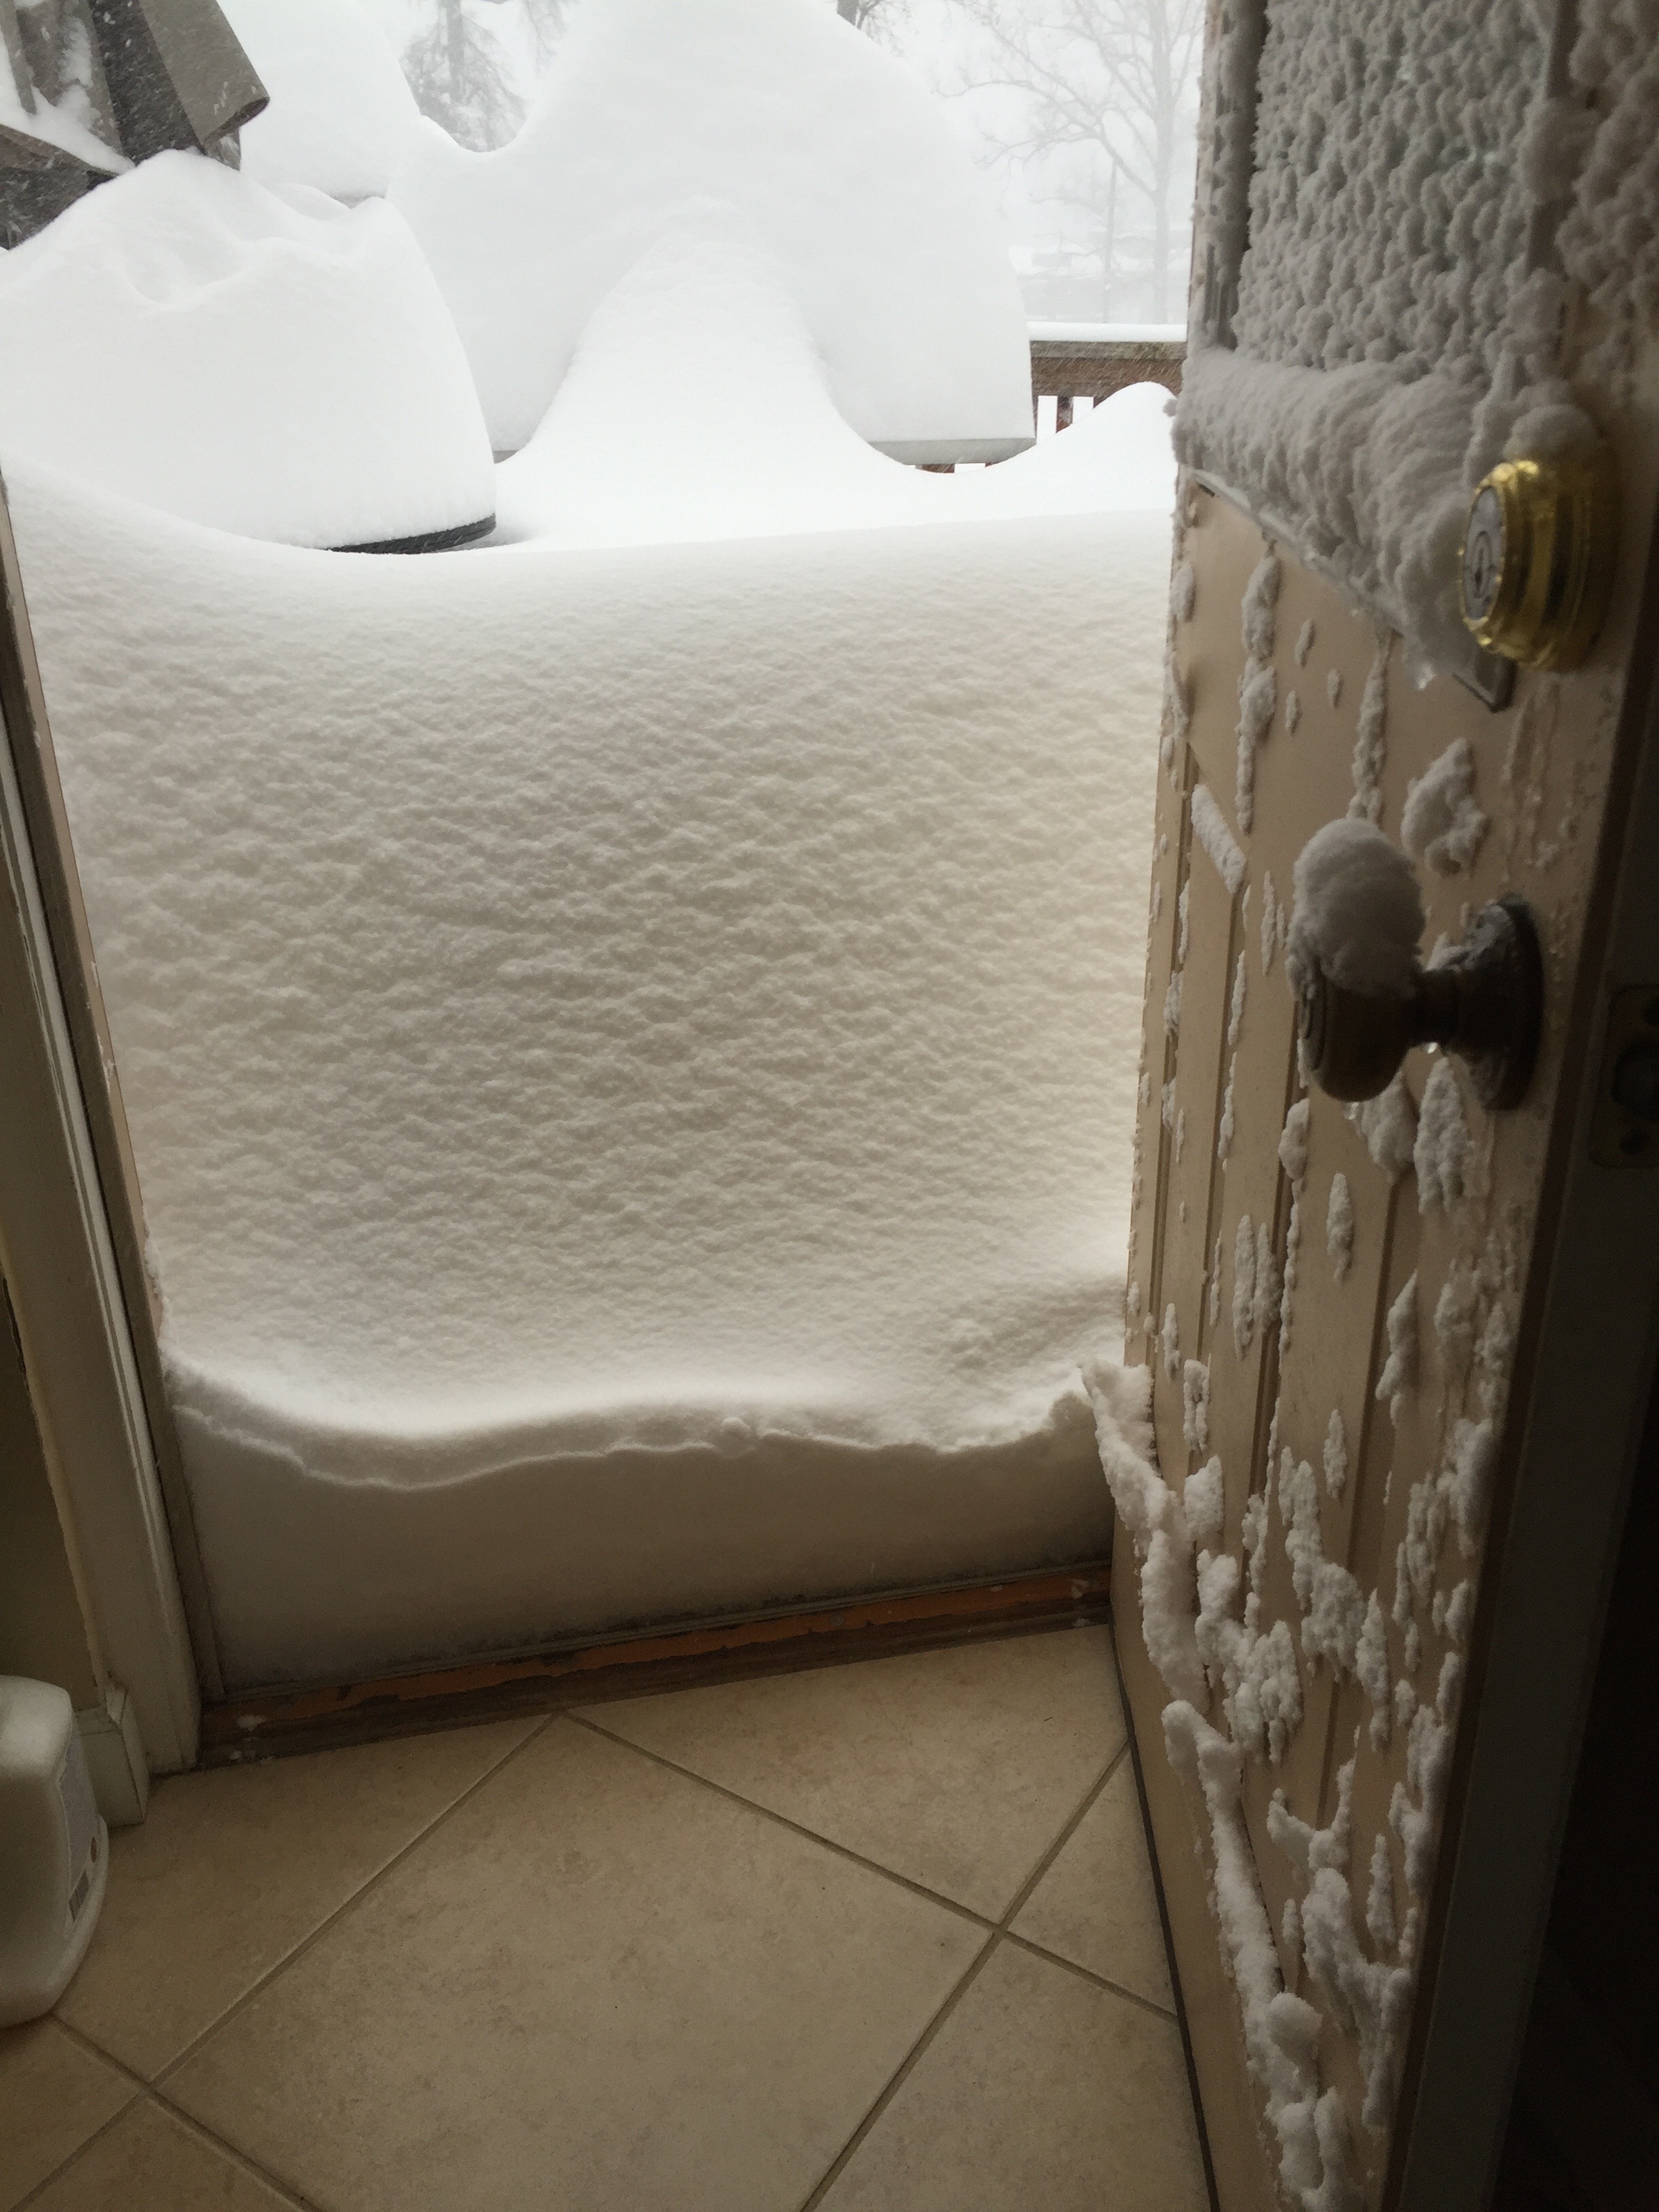 Snow at door